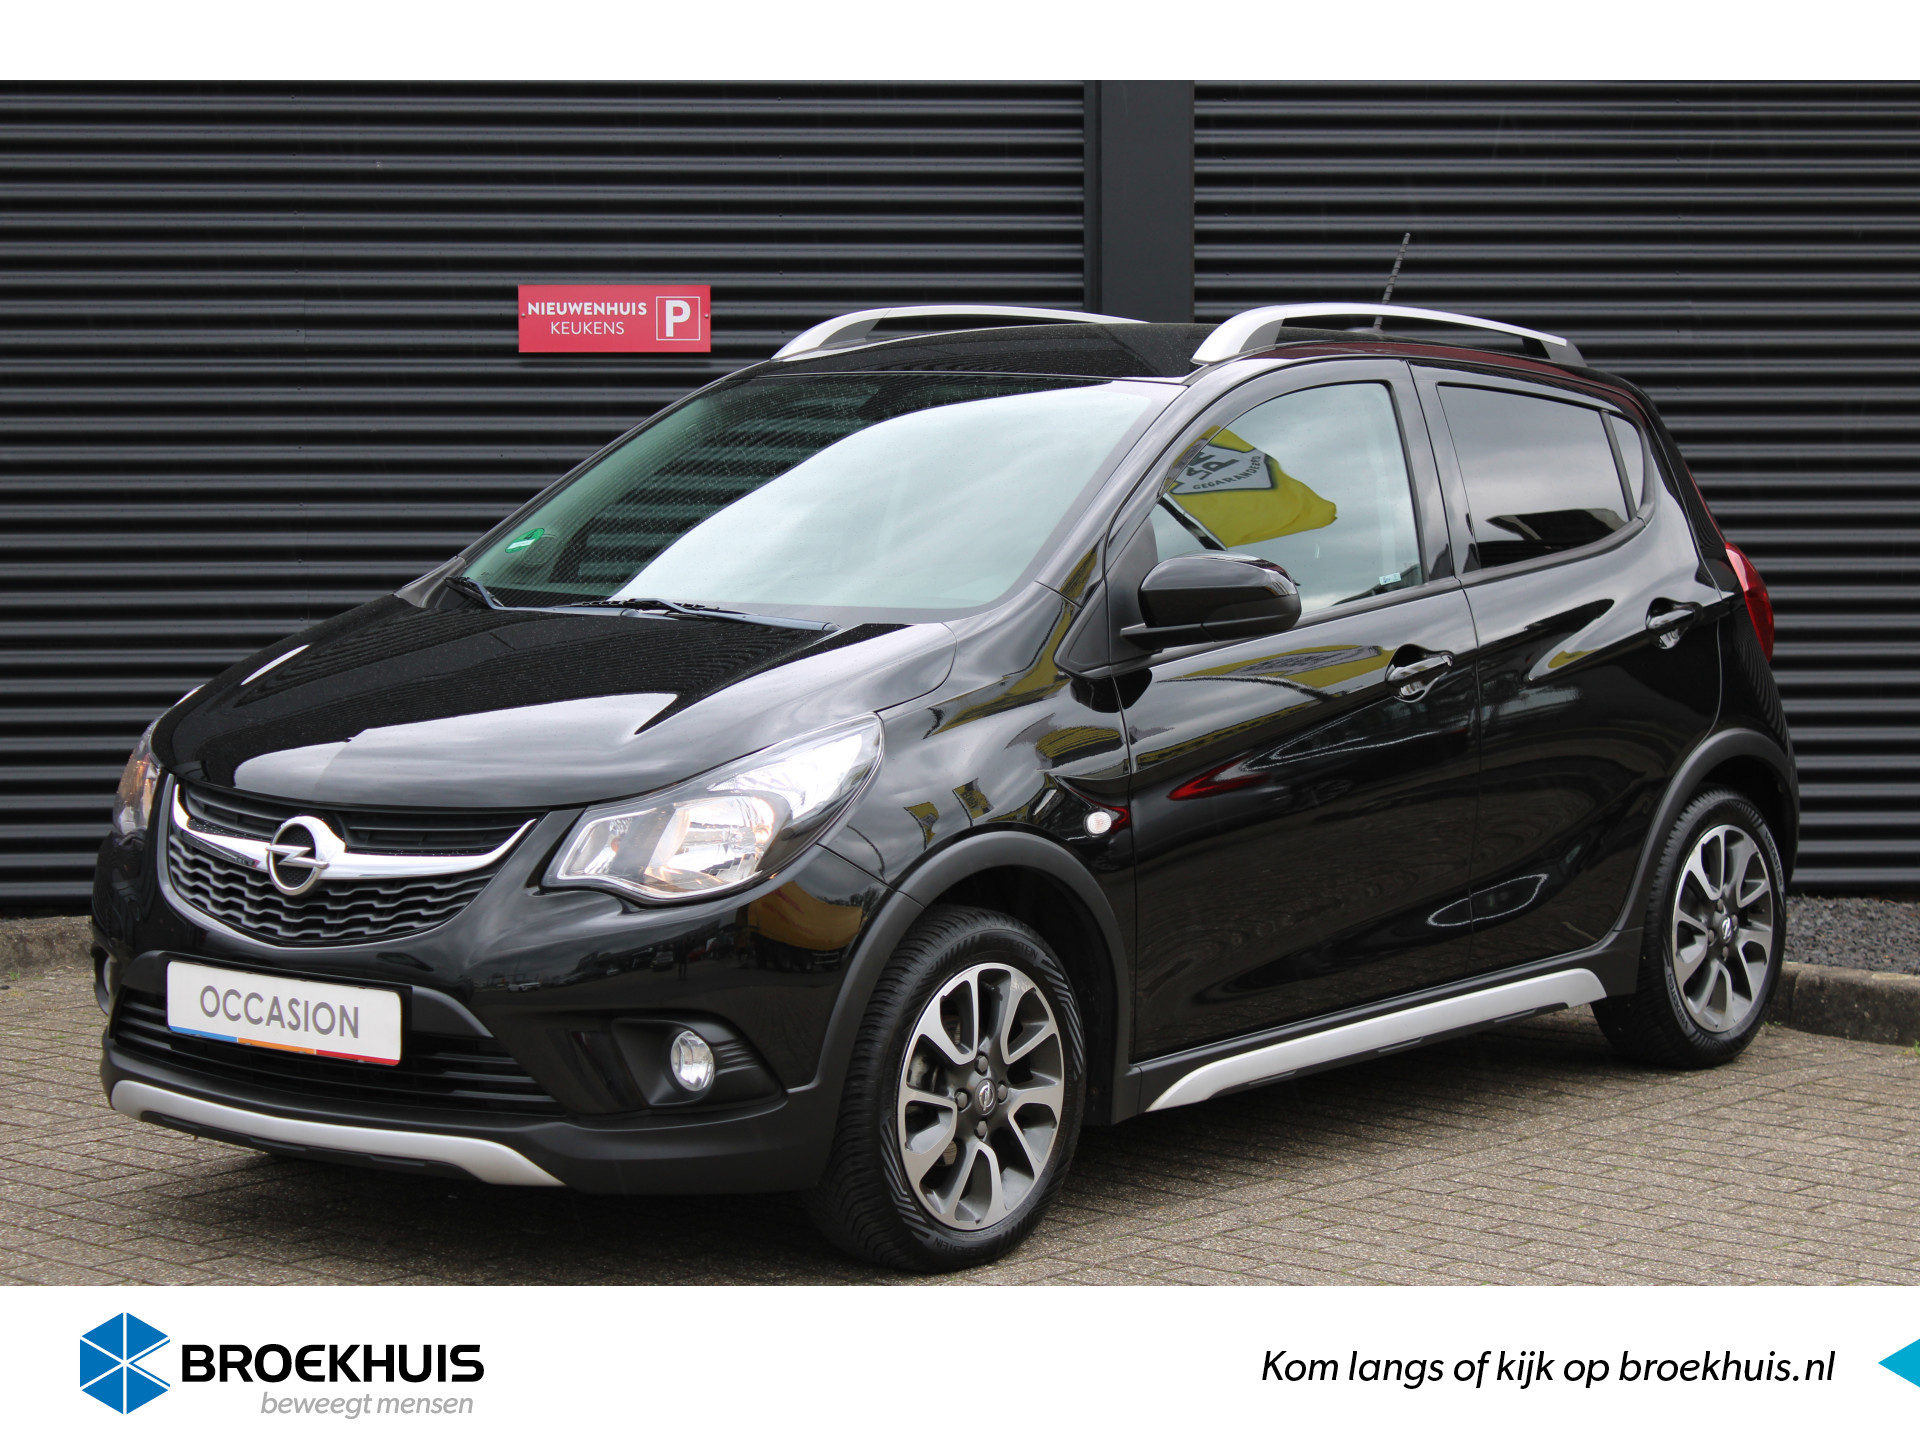 Opel KARL ROCKS 1.0 75PK 5-DRS ONLINE EDITION+ Navigatie / Park Pilot / 15"LMV / Bluetooth / LED / Cruise control / CPV / Elec. Ramen "Vraag een vrijblijvende offerte aan!" bij viaBOVAG.nl